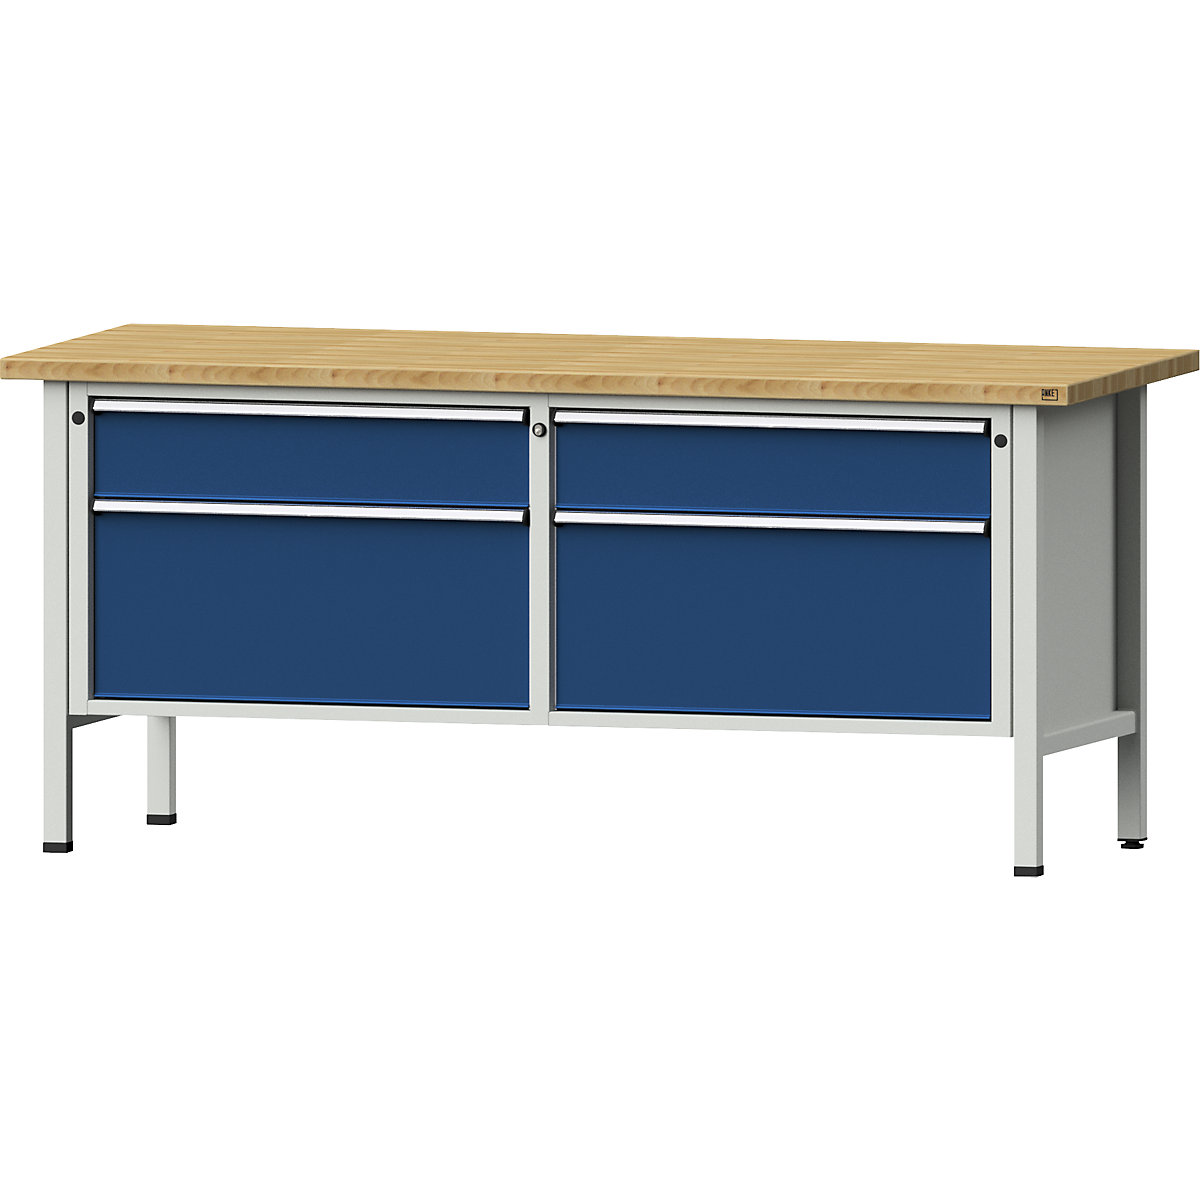 Dílenské stoly s šířkou 2000 mm, rámová konstrukce – ANKE, 4 zásuvky, deska z bukového masivu, výška 890 mm